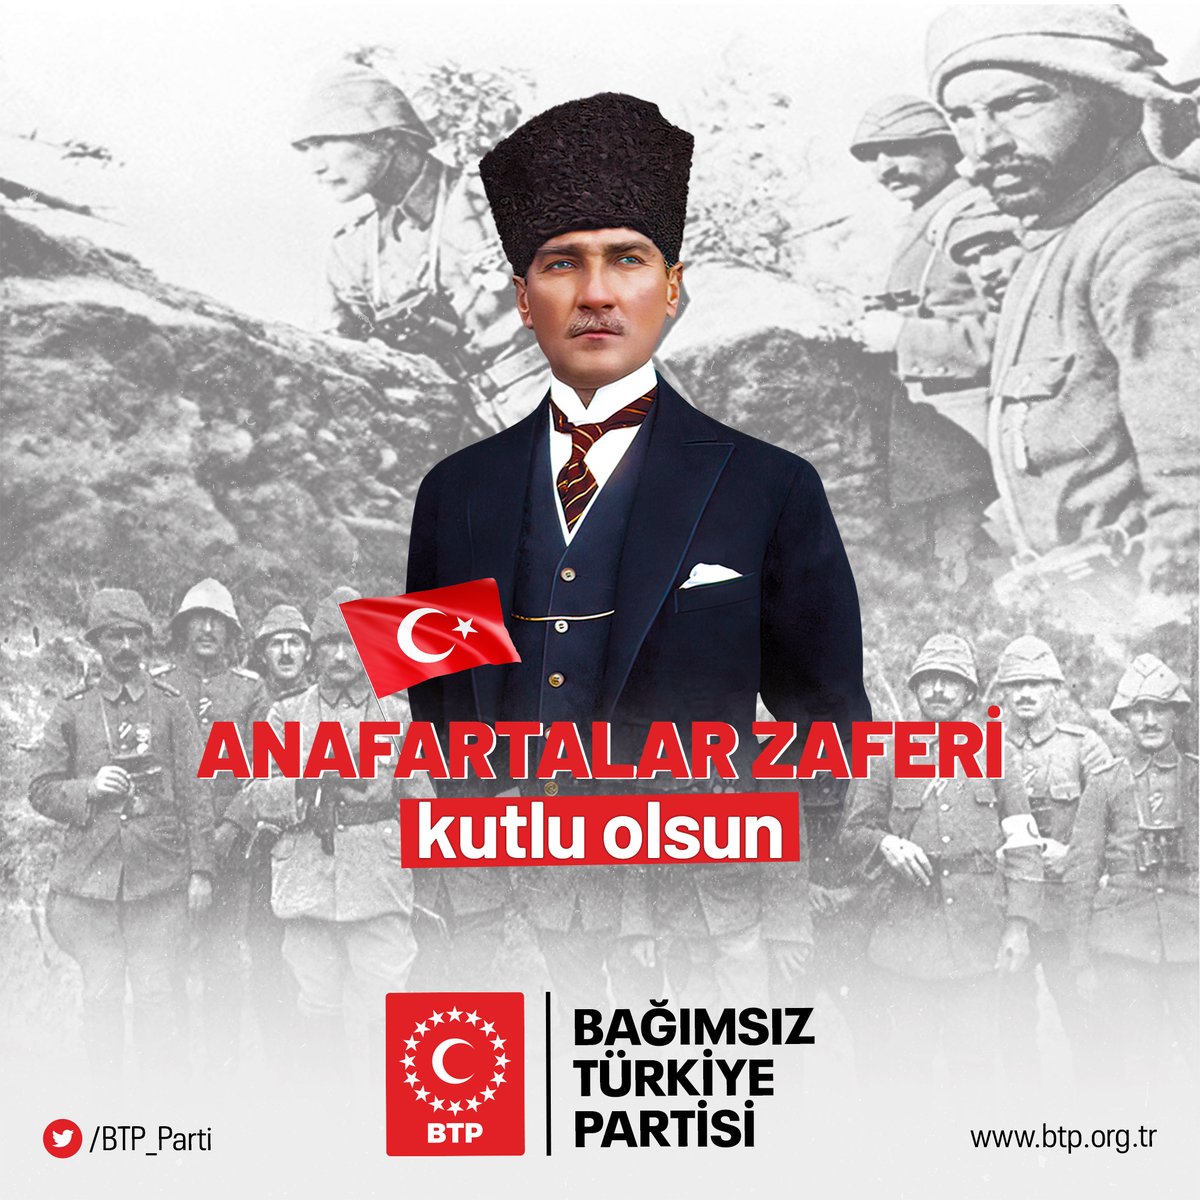 Tarihin akışını değiştiren Anafartalar Zaferi'nin 108.yılında, tarihimize eşsiz bir zafer armağan eden Anafartalar Grup Komutanı Mustafa Kemal Paşa başta olmak üzere tüm Çanakkale kahramanlarını saygı ve minnetle anıyoruz. #AnafartalarZaferi